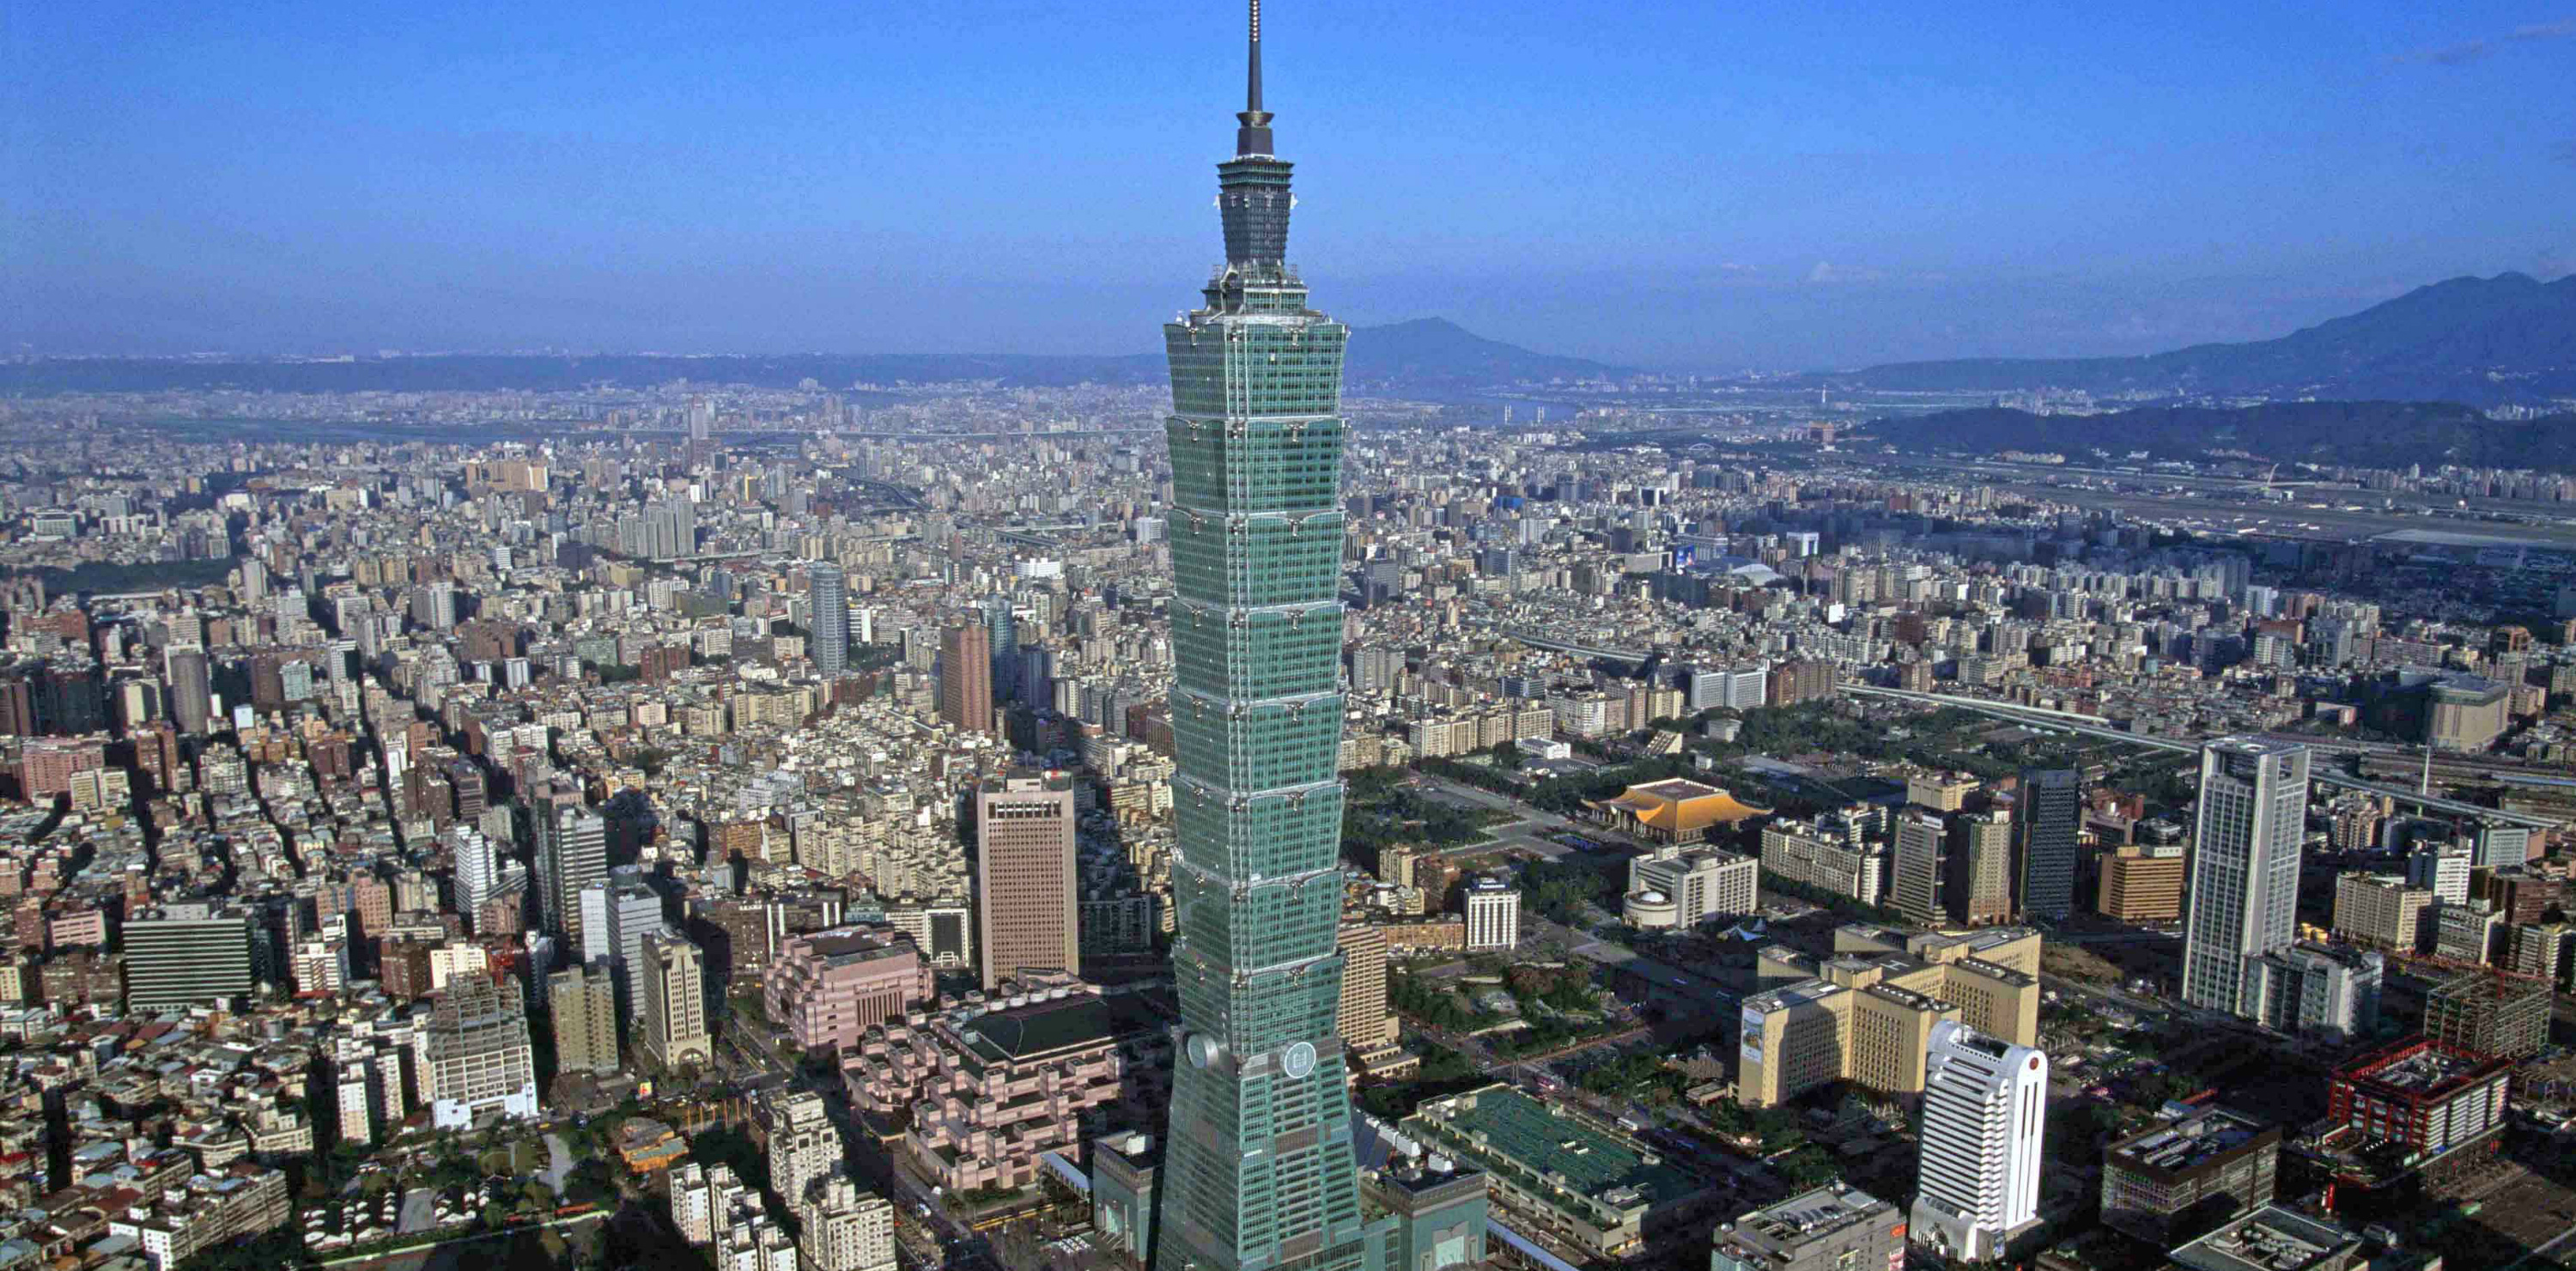 Una imagen de la torre TAIPEI 101, en Taipéi, Taiwan que ha sabido reciclarse con el paso de los años. Foto: Taipei Financial. Foto cedida por The Council on Tall Buildings and Urban Habitat (CTBUH).